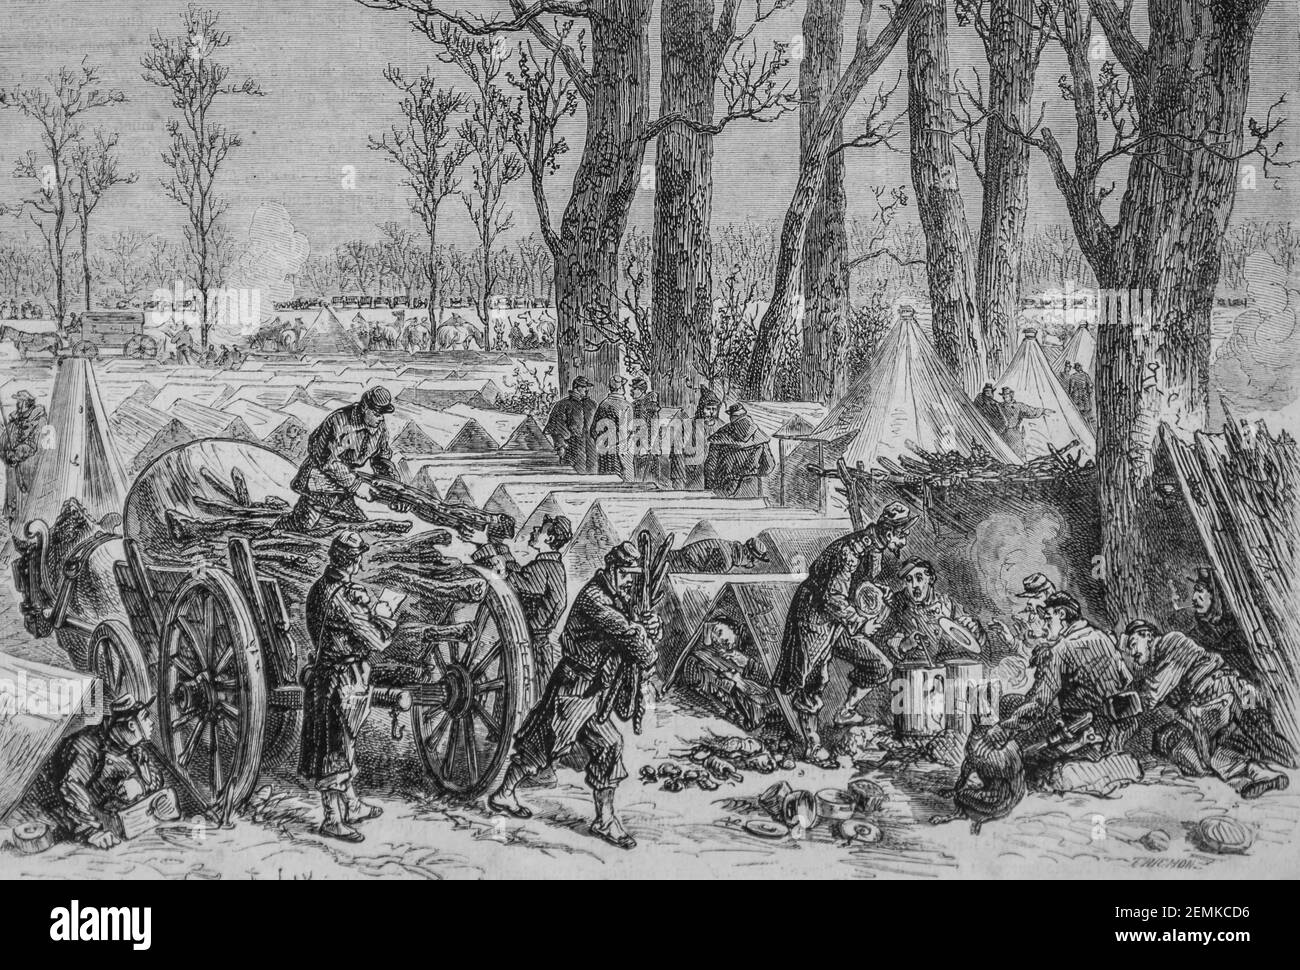 le siège de paris, bivouac des troupes du général ducrot, dans le b oius de vincennes, près de la bataille de villiers, l'univers illustrateur, éditeur michel l Banque D'Images